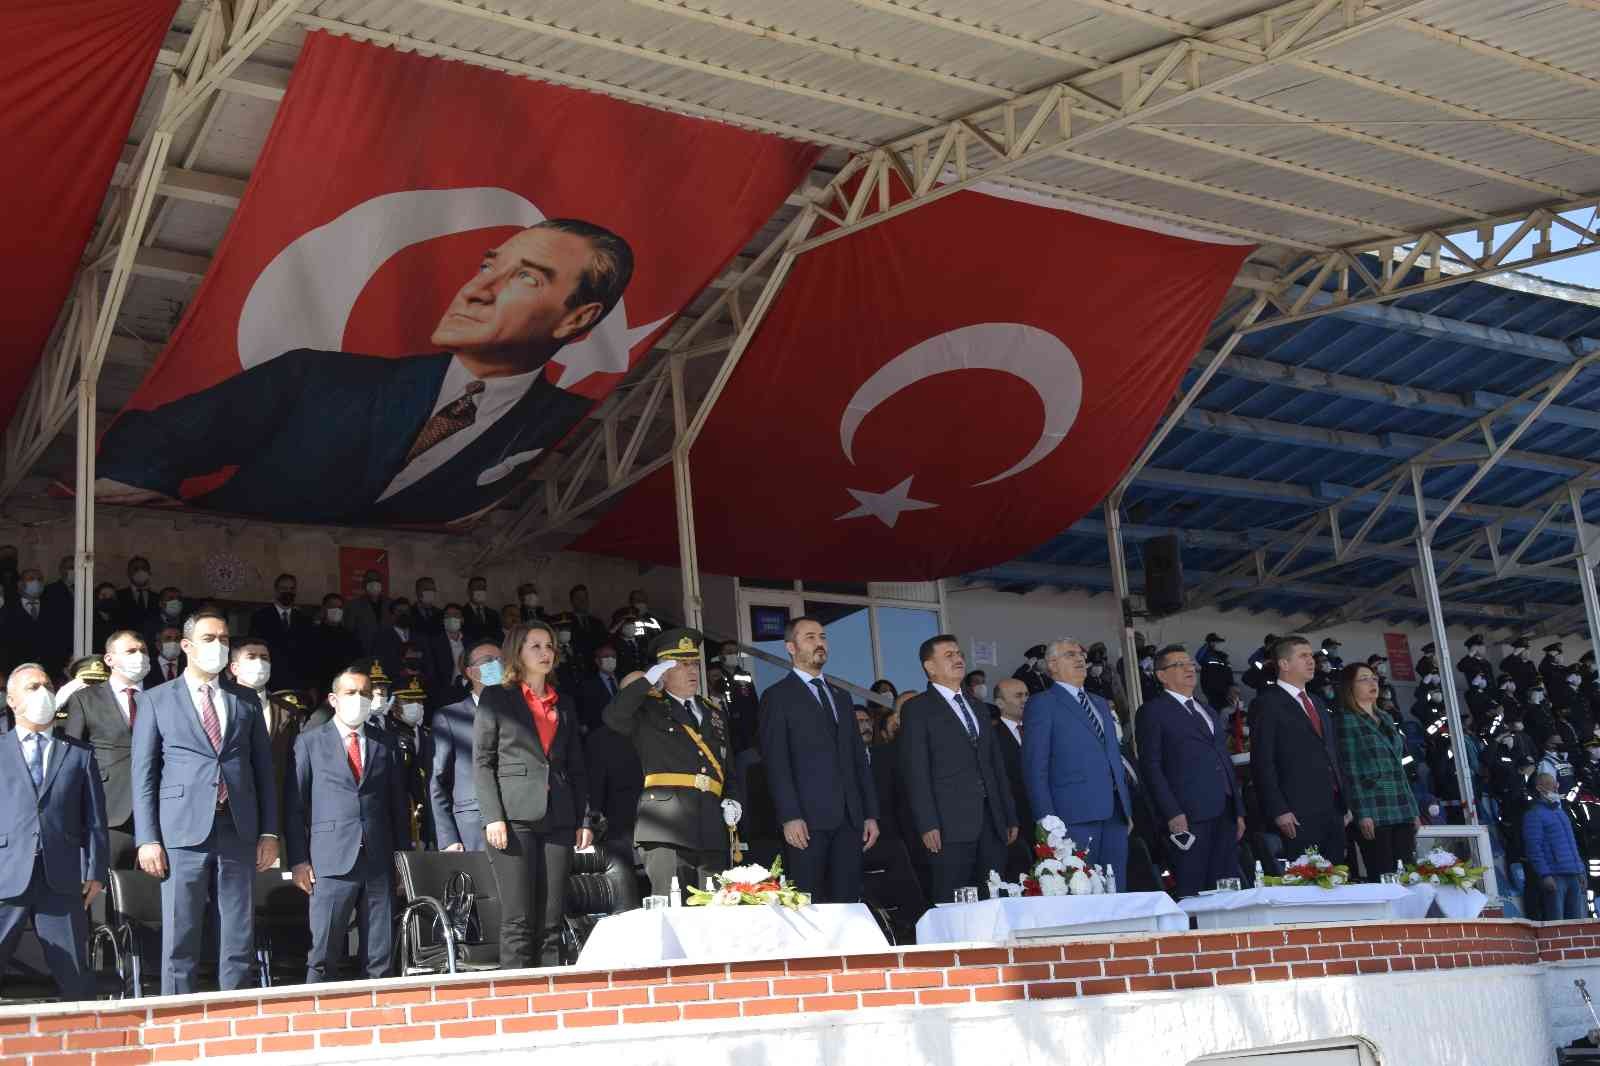 Burdur’da Cumhuriyet’in 98’inci yılı coşkuyla kutlandı #burdur